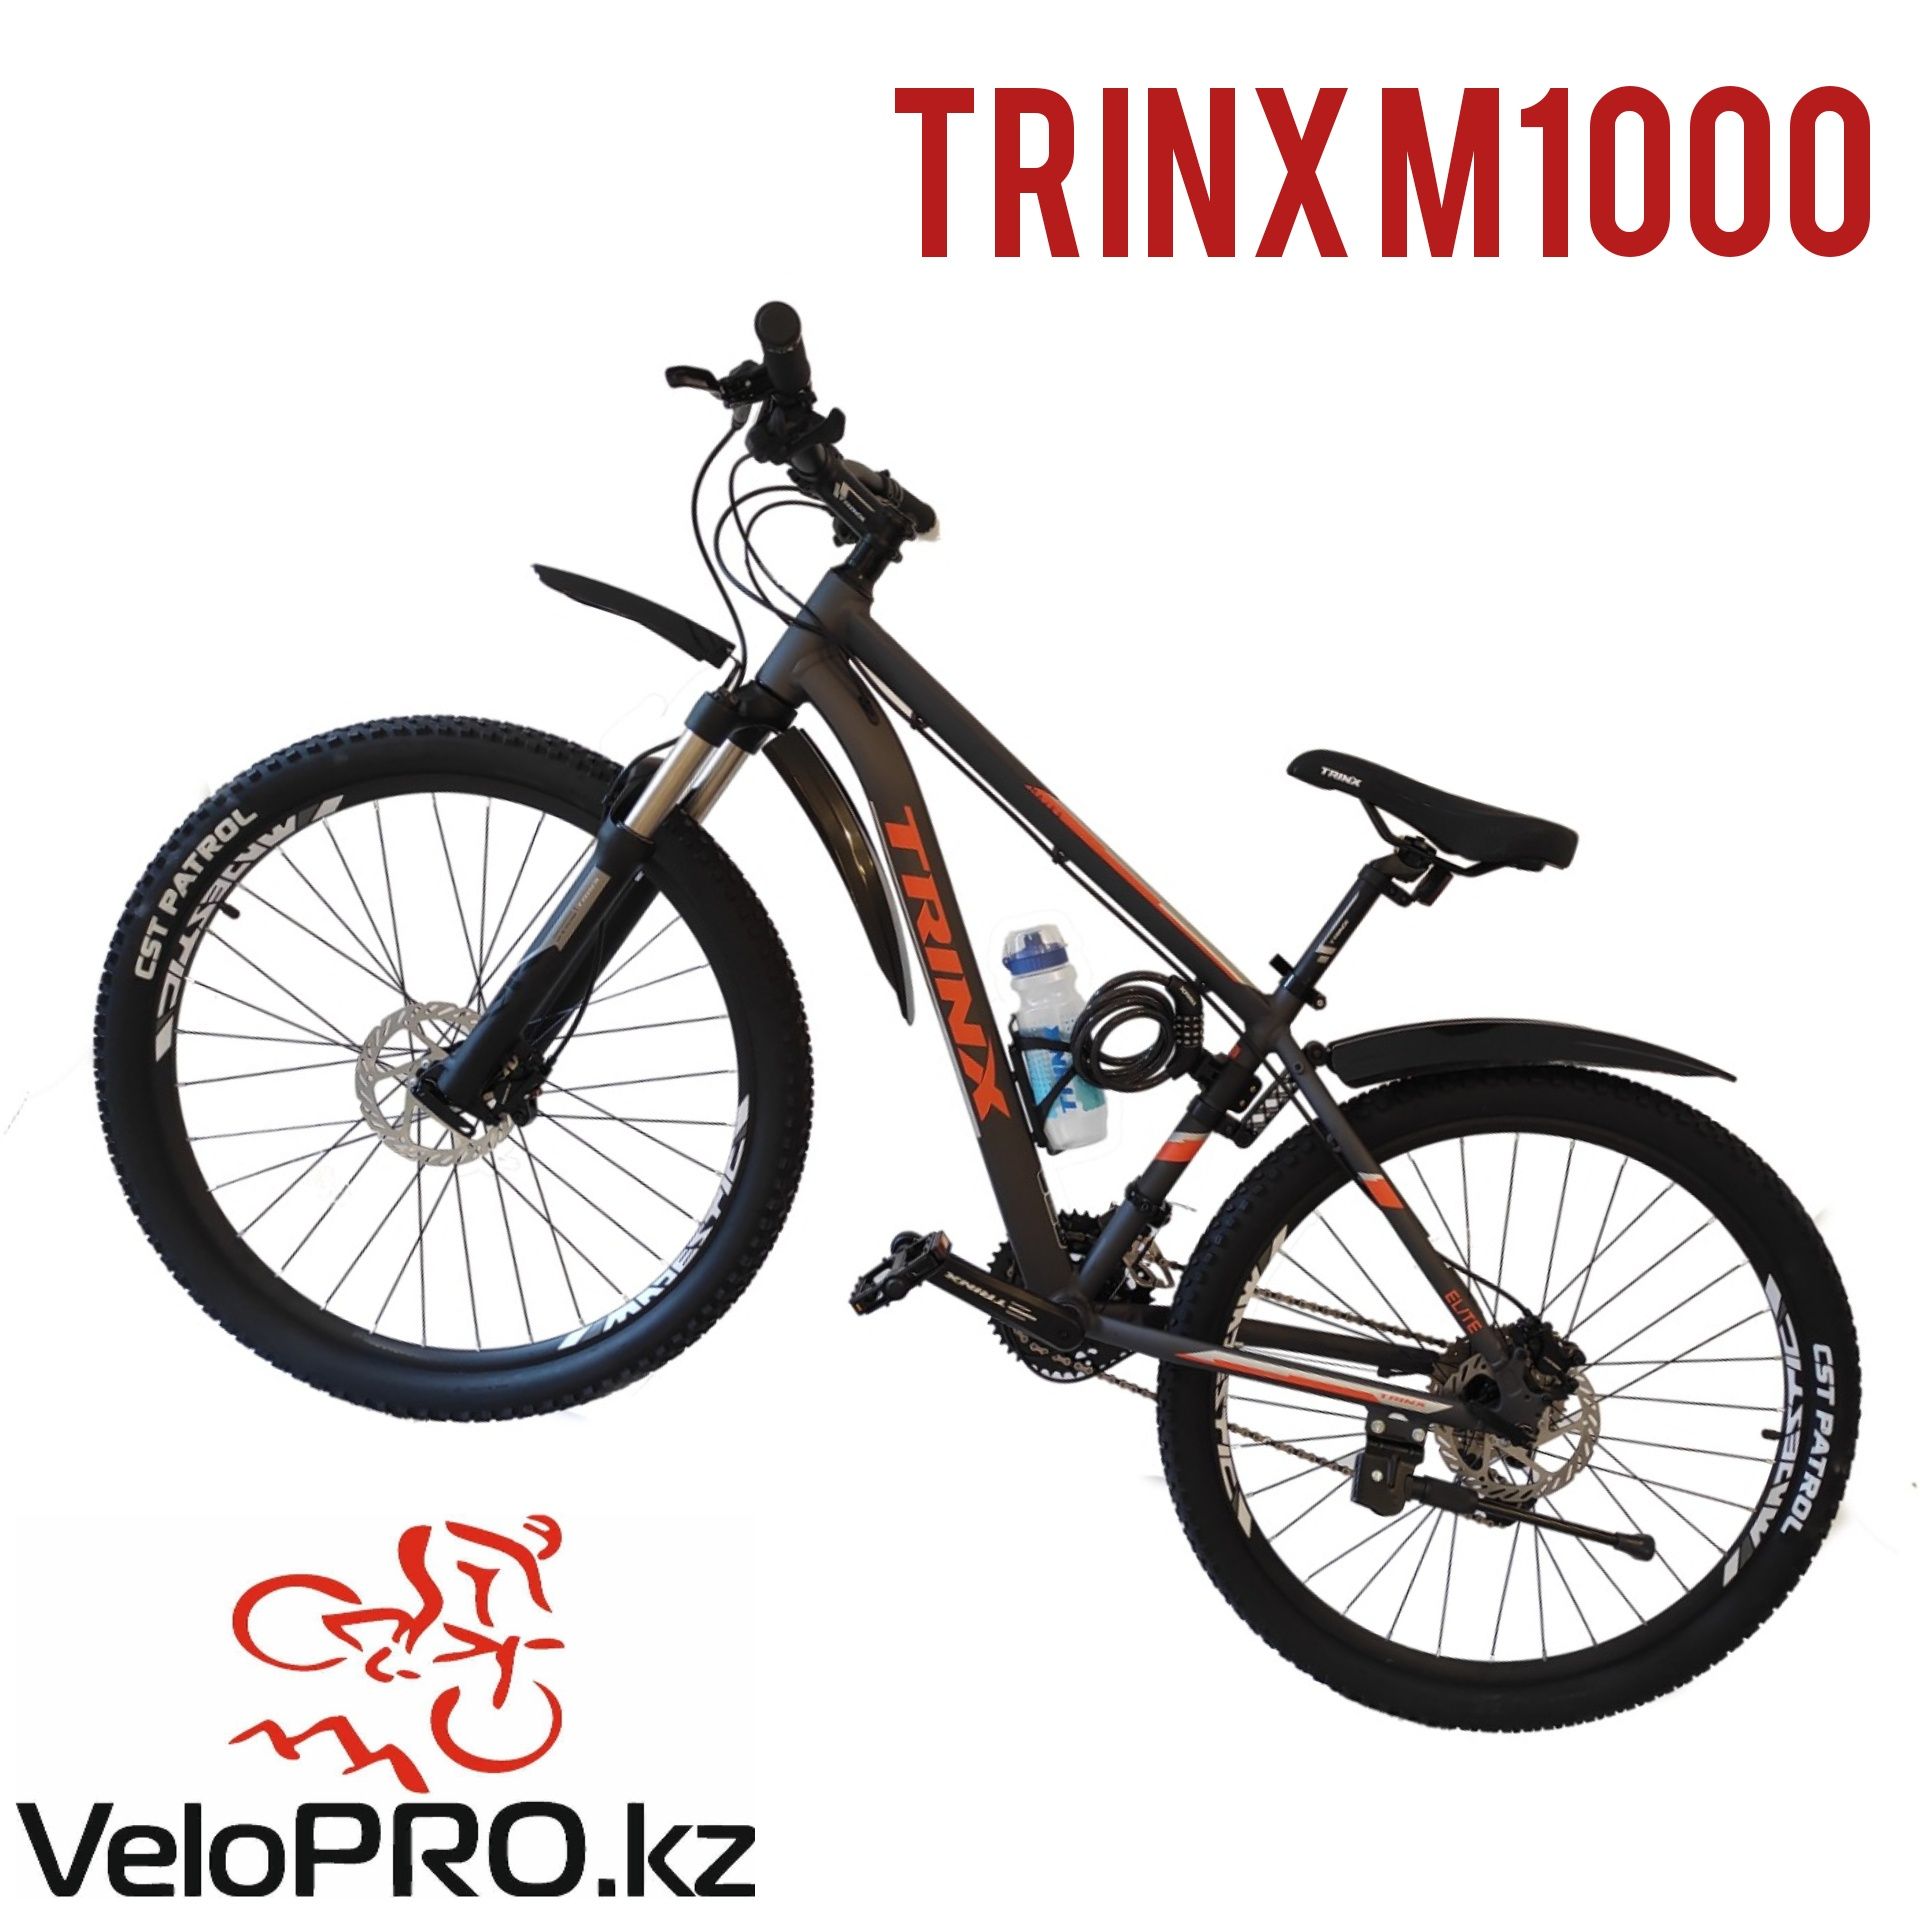 Велосипед Trinx m1000 Elite. 16,19,21 рама. 26, 27.5, 29 колеса.